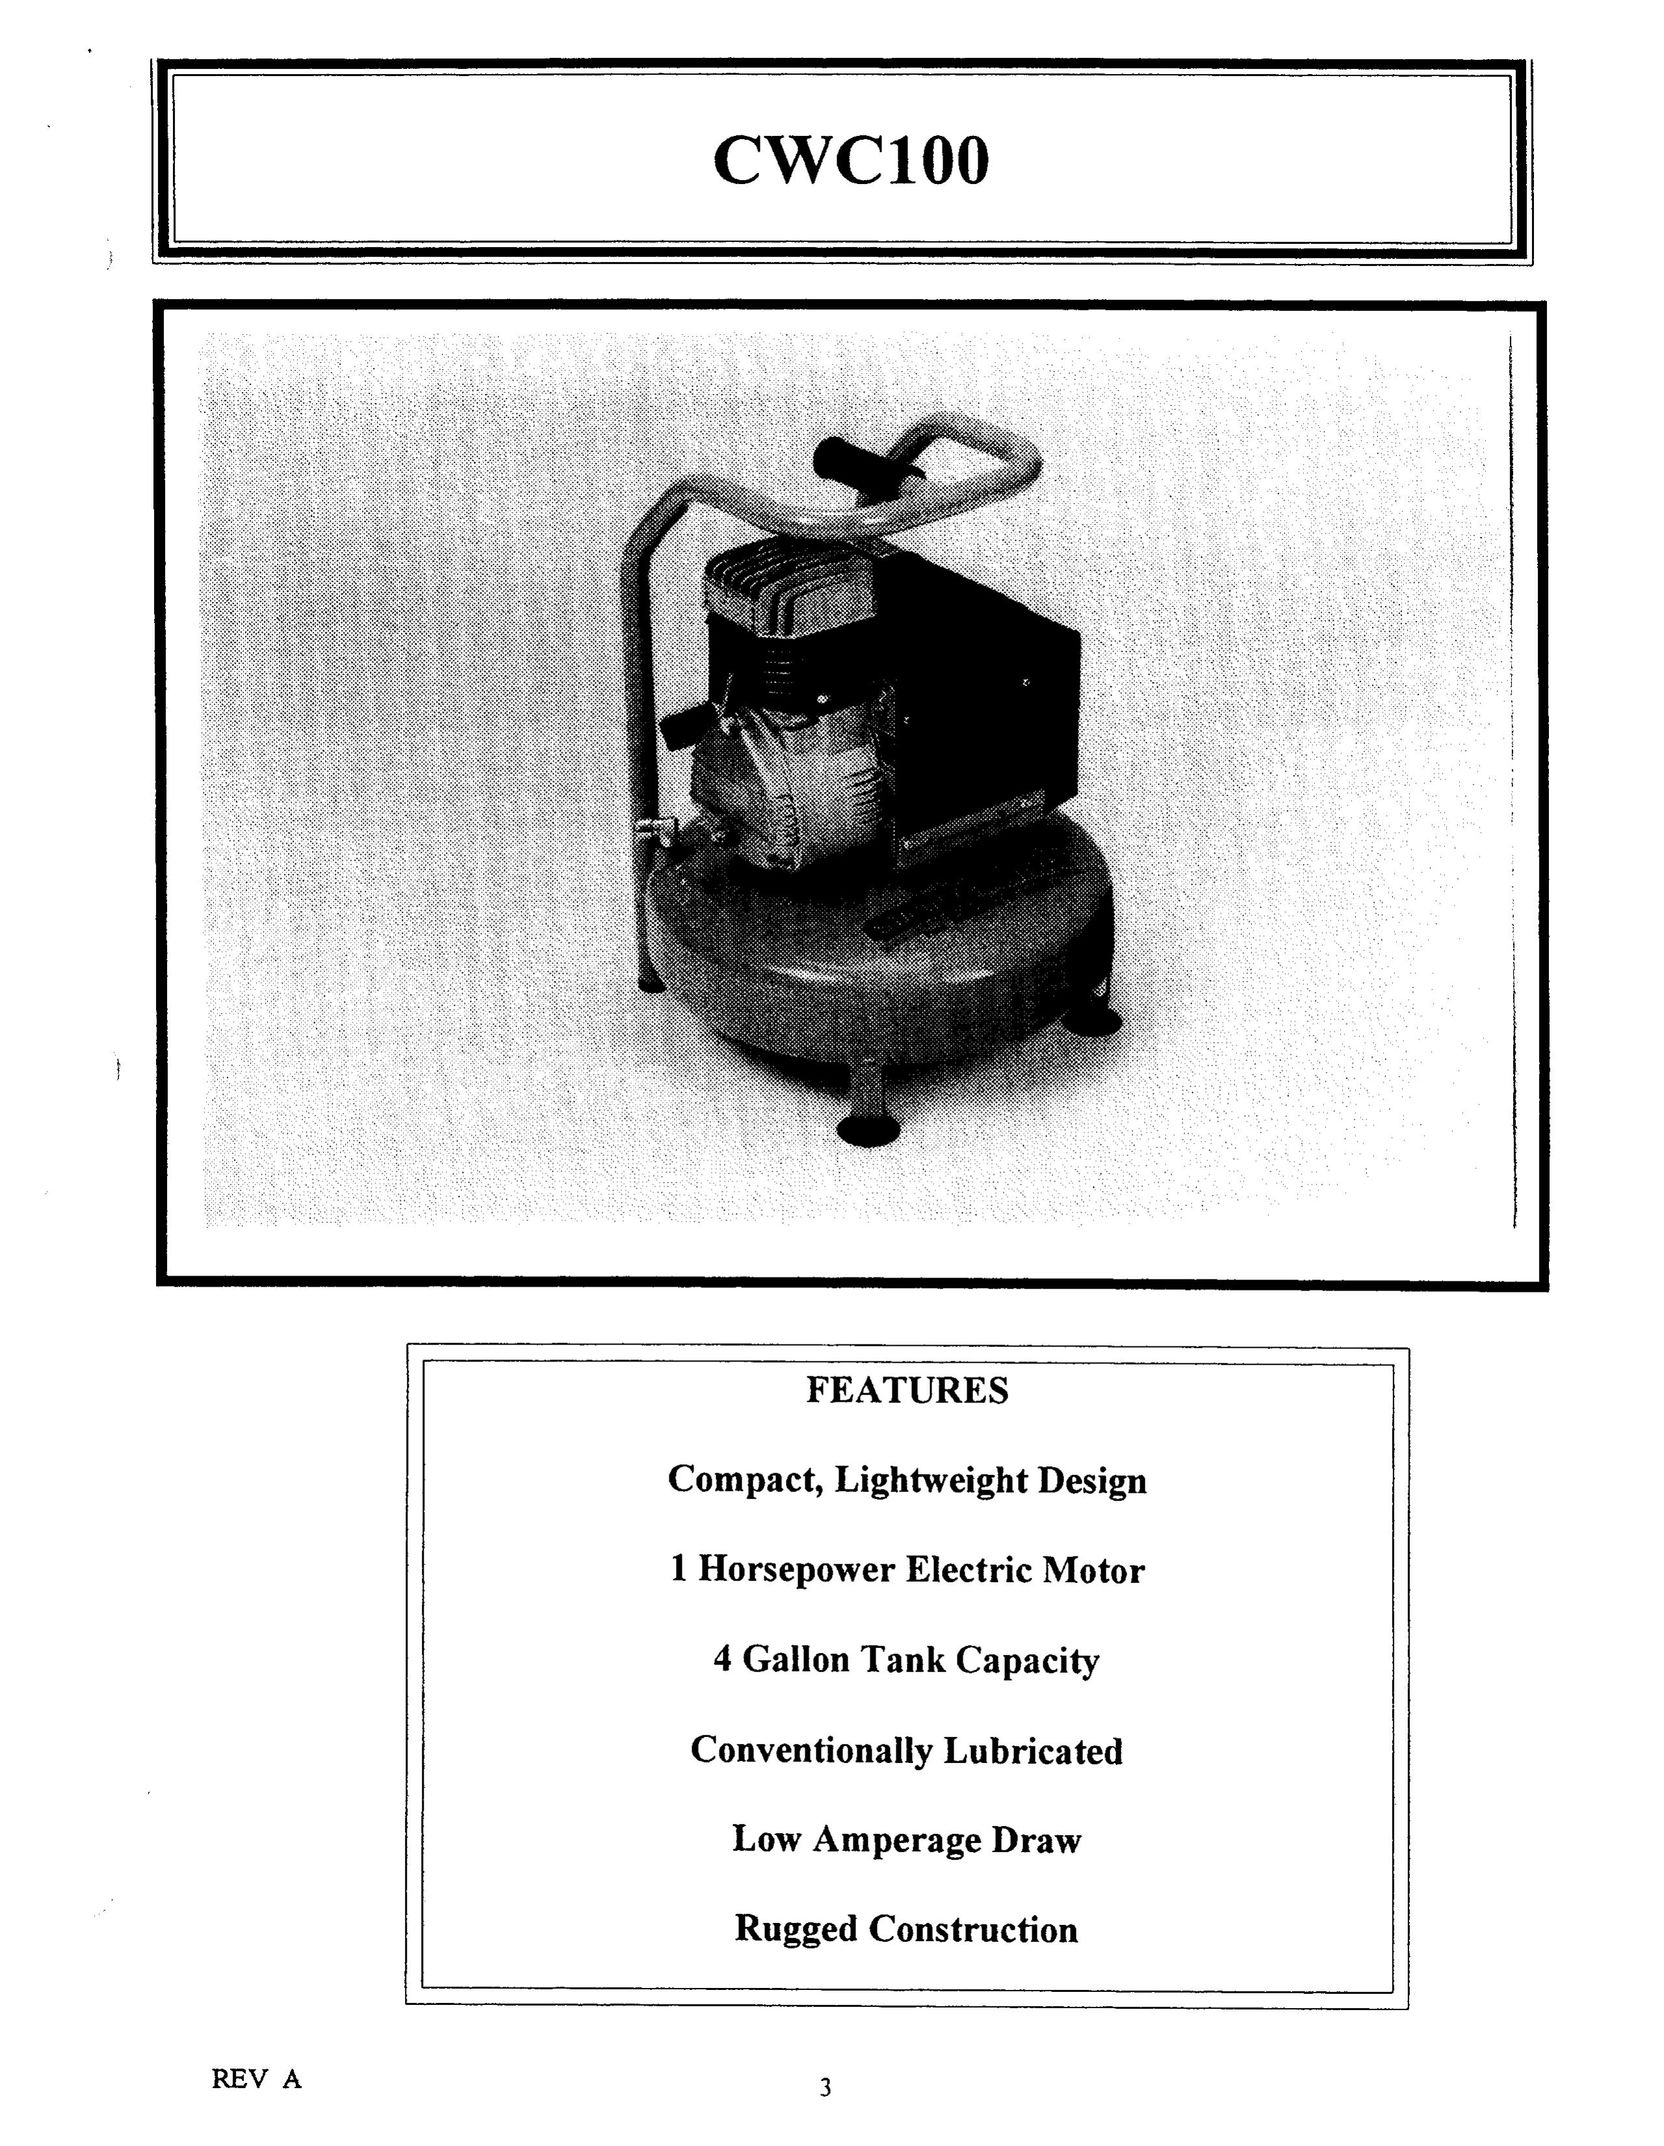 Bostitch CWC100 Air Compressor User Manual